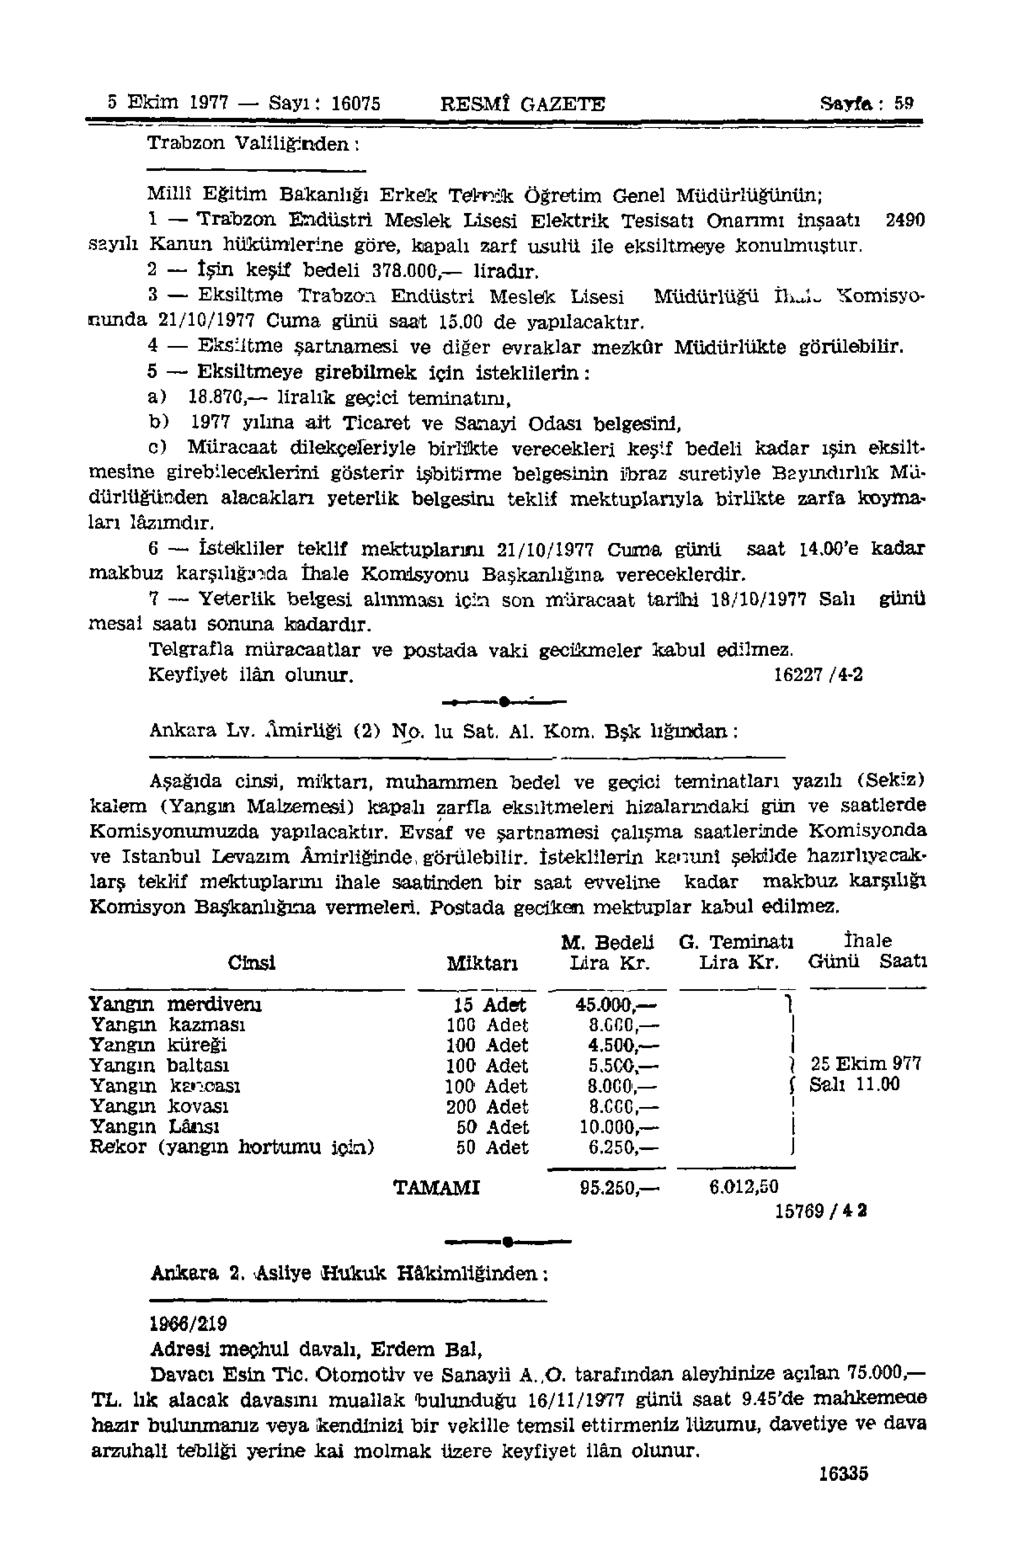 5 Ekim 1977 Sayı: 16075 RESMÎ GAZETE Sayfa: 59 Trabzon Valiliğinden: Millî Eğitim Bakanlığı Erkek Teknik Öğretim Genel Müdürlüğünün; 1 Trabzon Endüstri Meslek Lisesi Elektrik Tesisatı Onarımı inşaatı